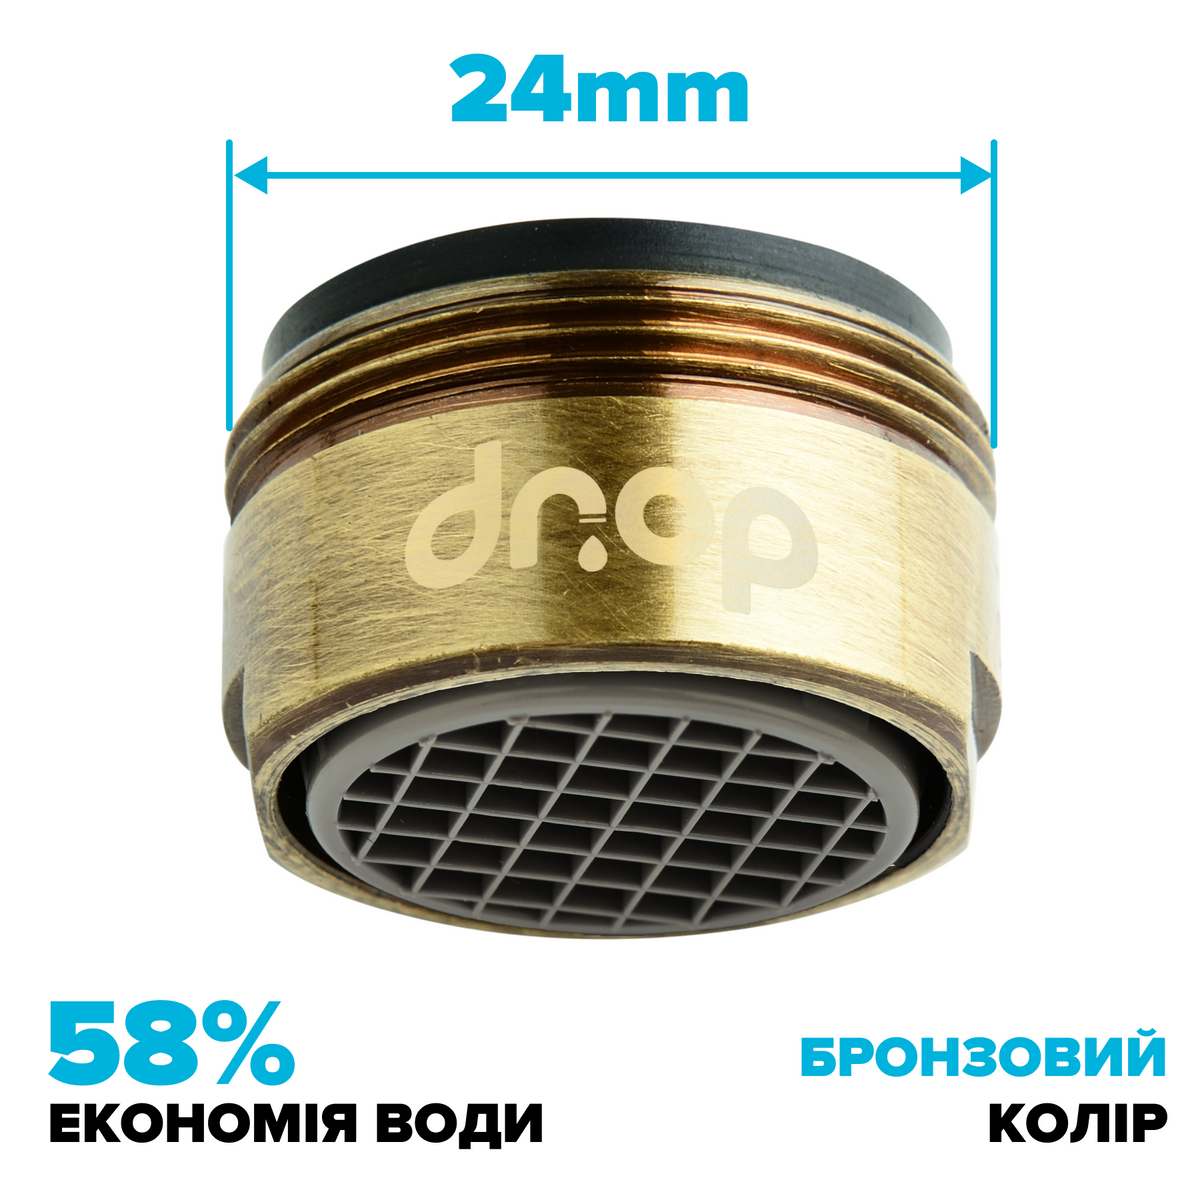 Водосберегающий аэратор DROP CL24-BRN для смесителя - Экономия 58%, внешняя М 24 мм, бронзовый